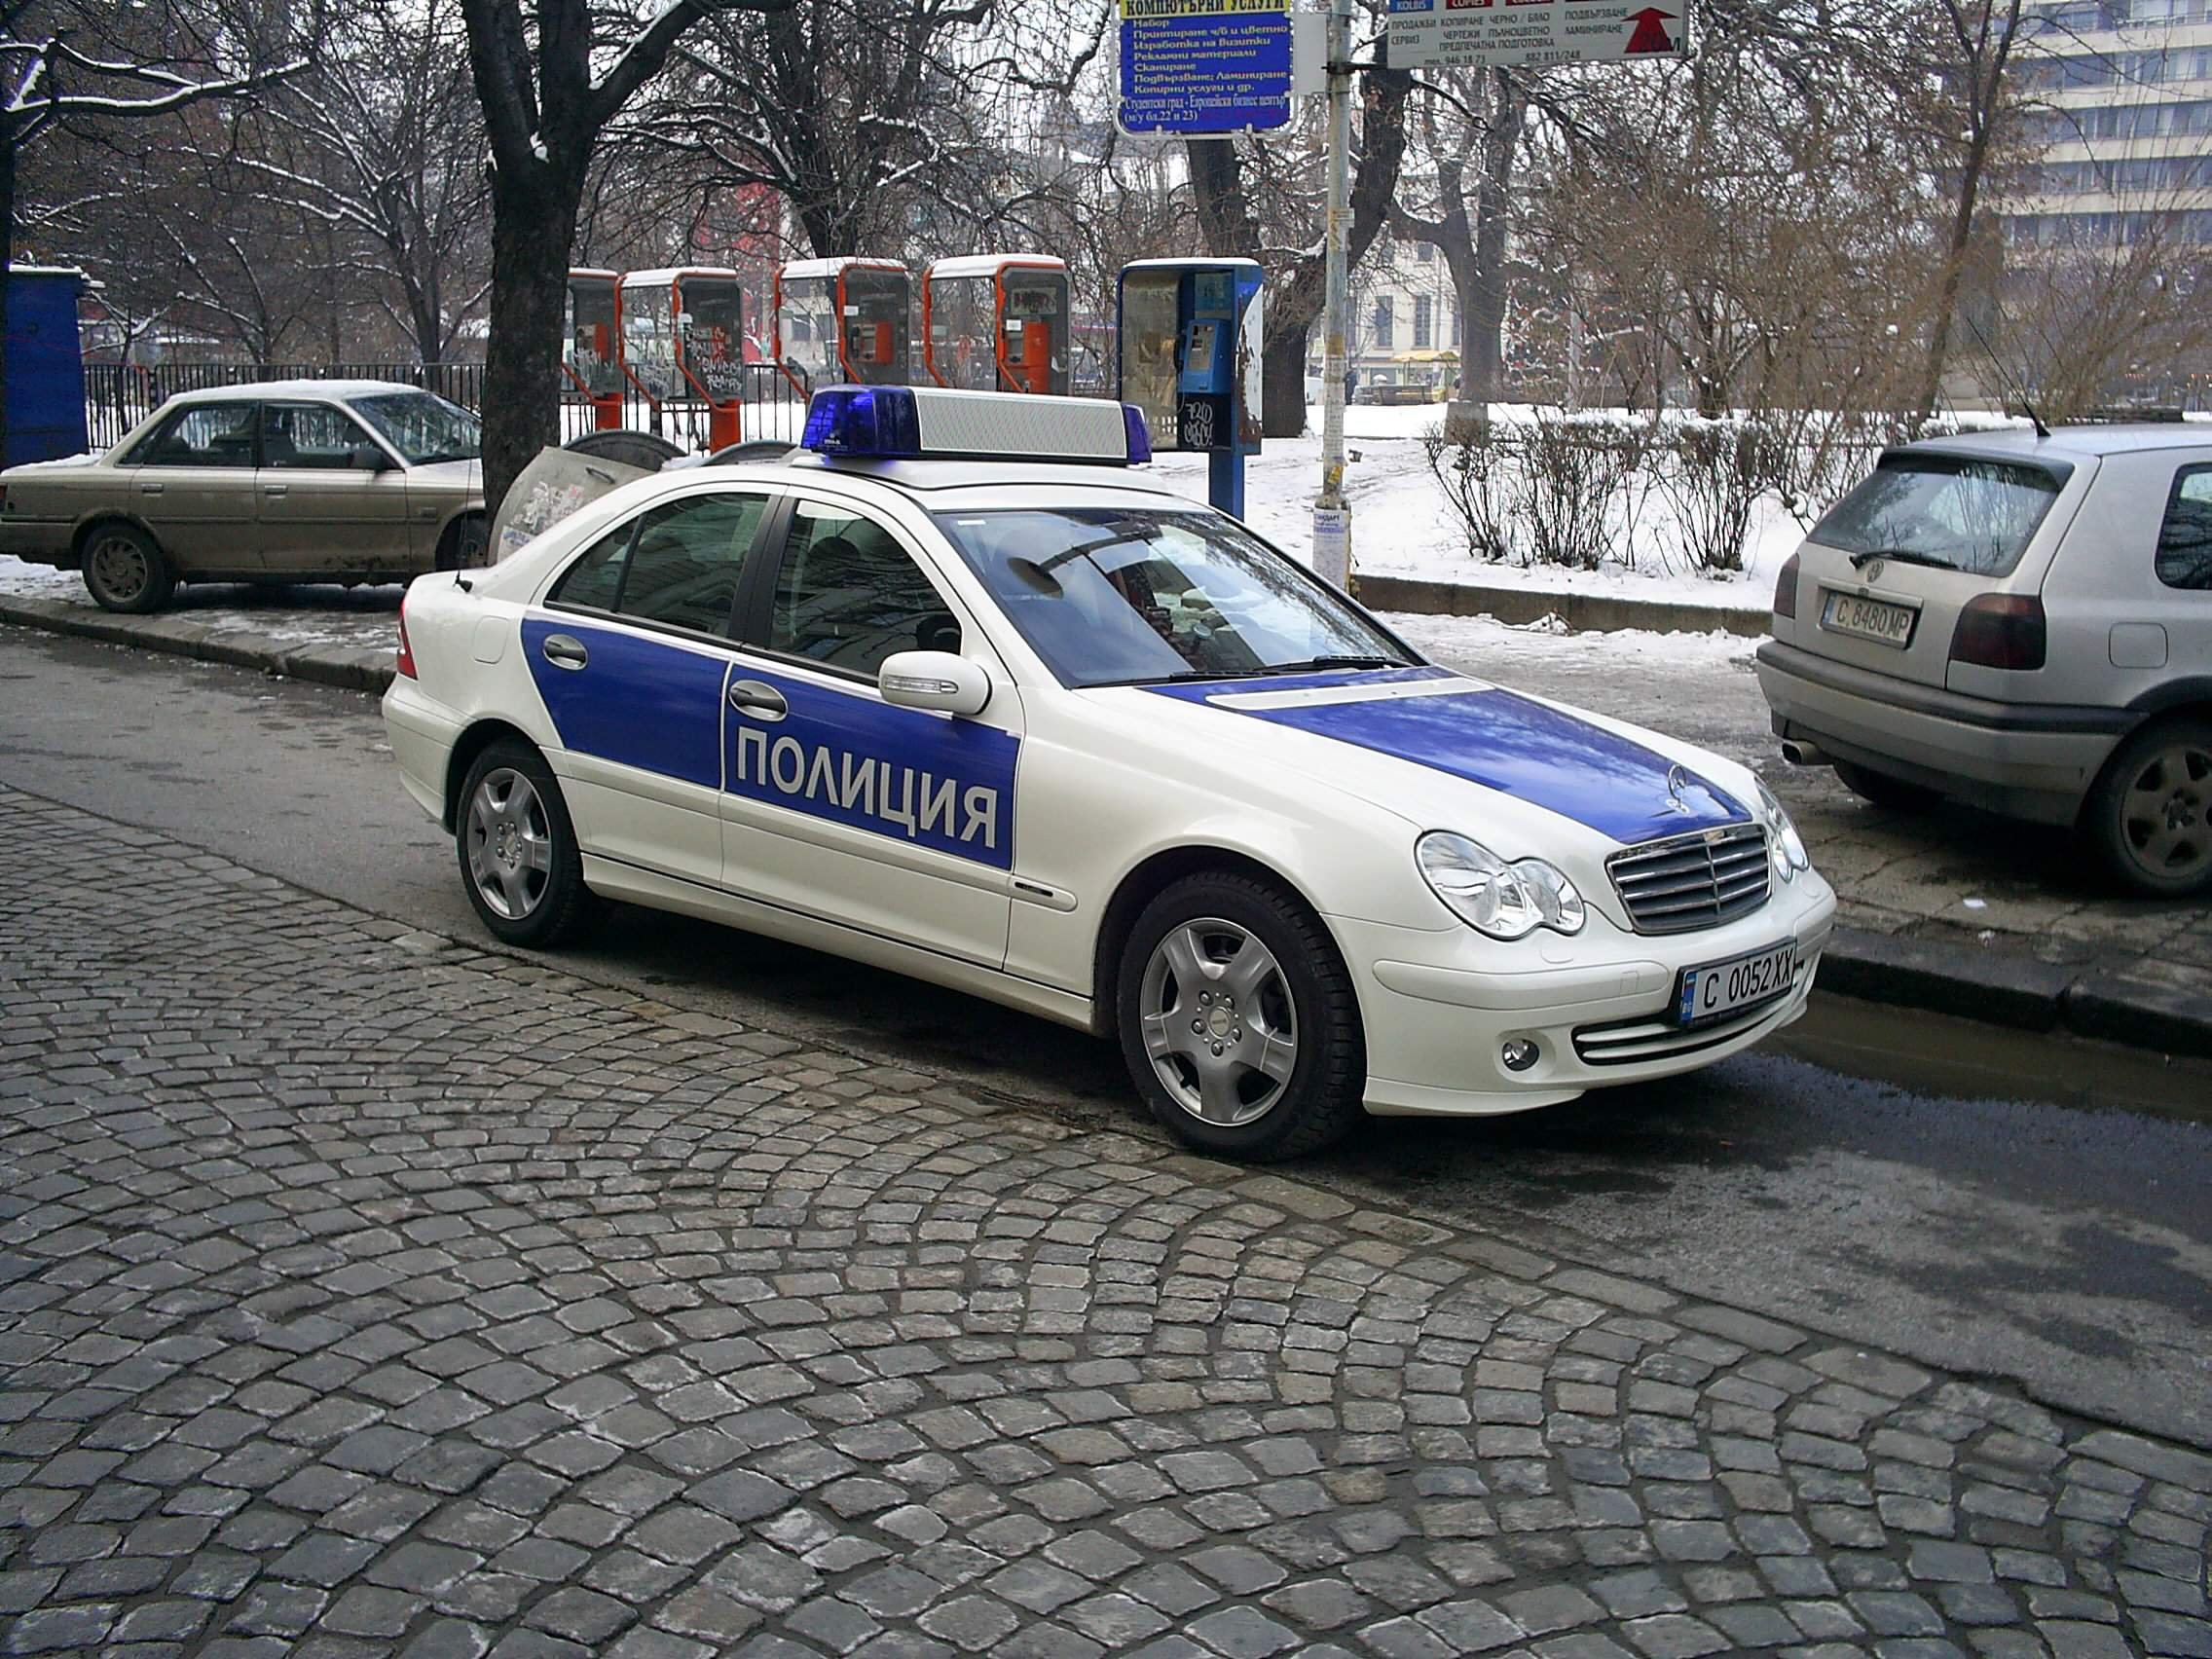  În Bulgaria maşinile de poliţie sunt reconvertite în ambulanţe